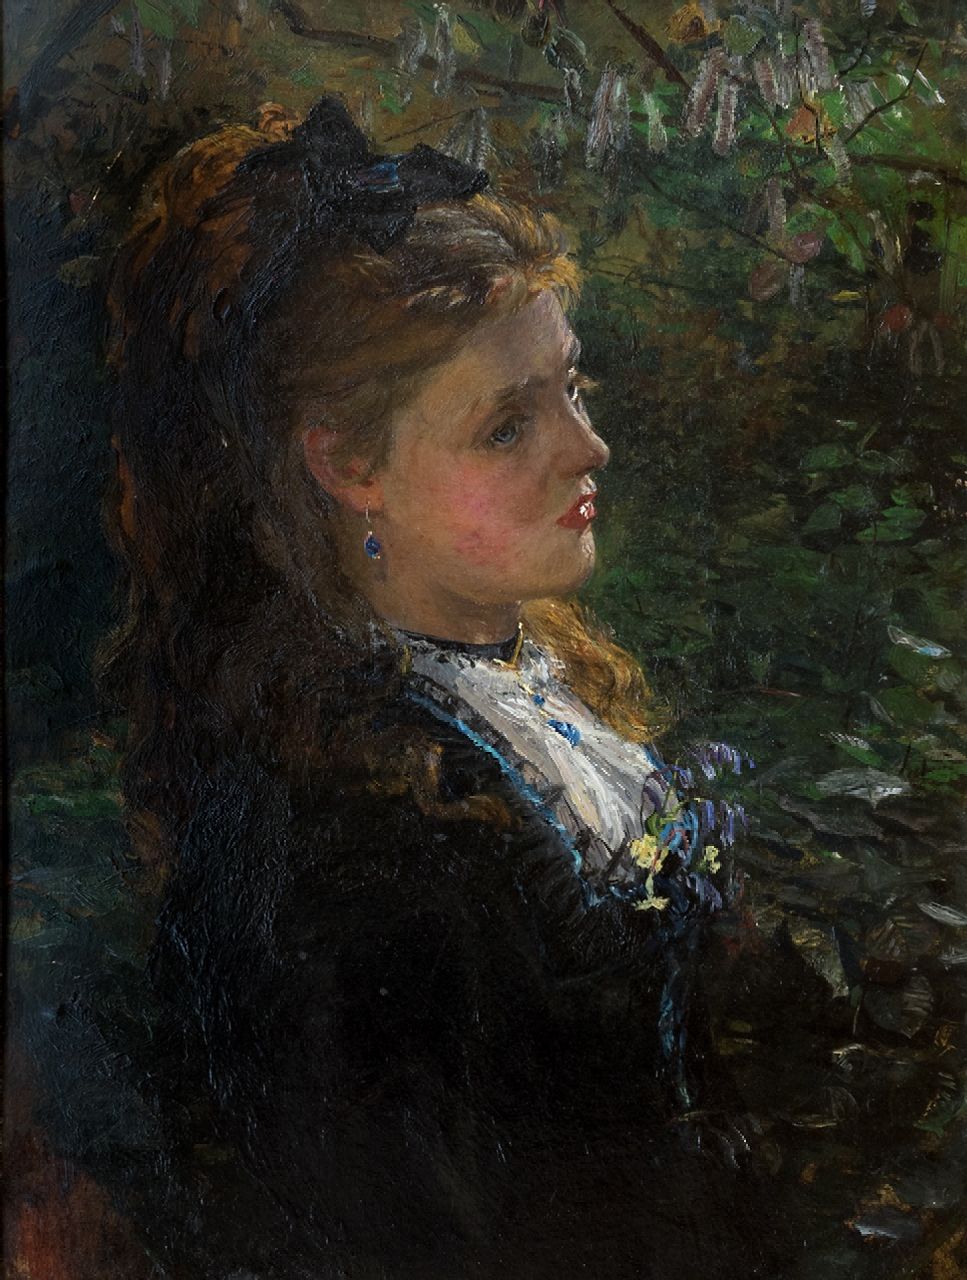 James Carroll Beckwith | Portret van een jonge vrouw onder de bomen, 1875-1878, mogelijk de jonge Émilie-Louise Delabigne (Valtesse de la Bigne)., olieverf op board, 40,0 x 30,0 cm, ca. 1875-1878